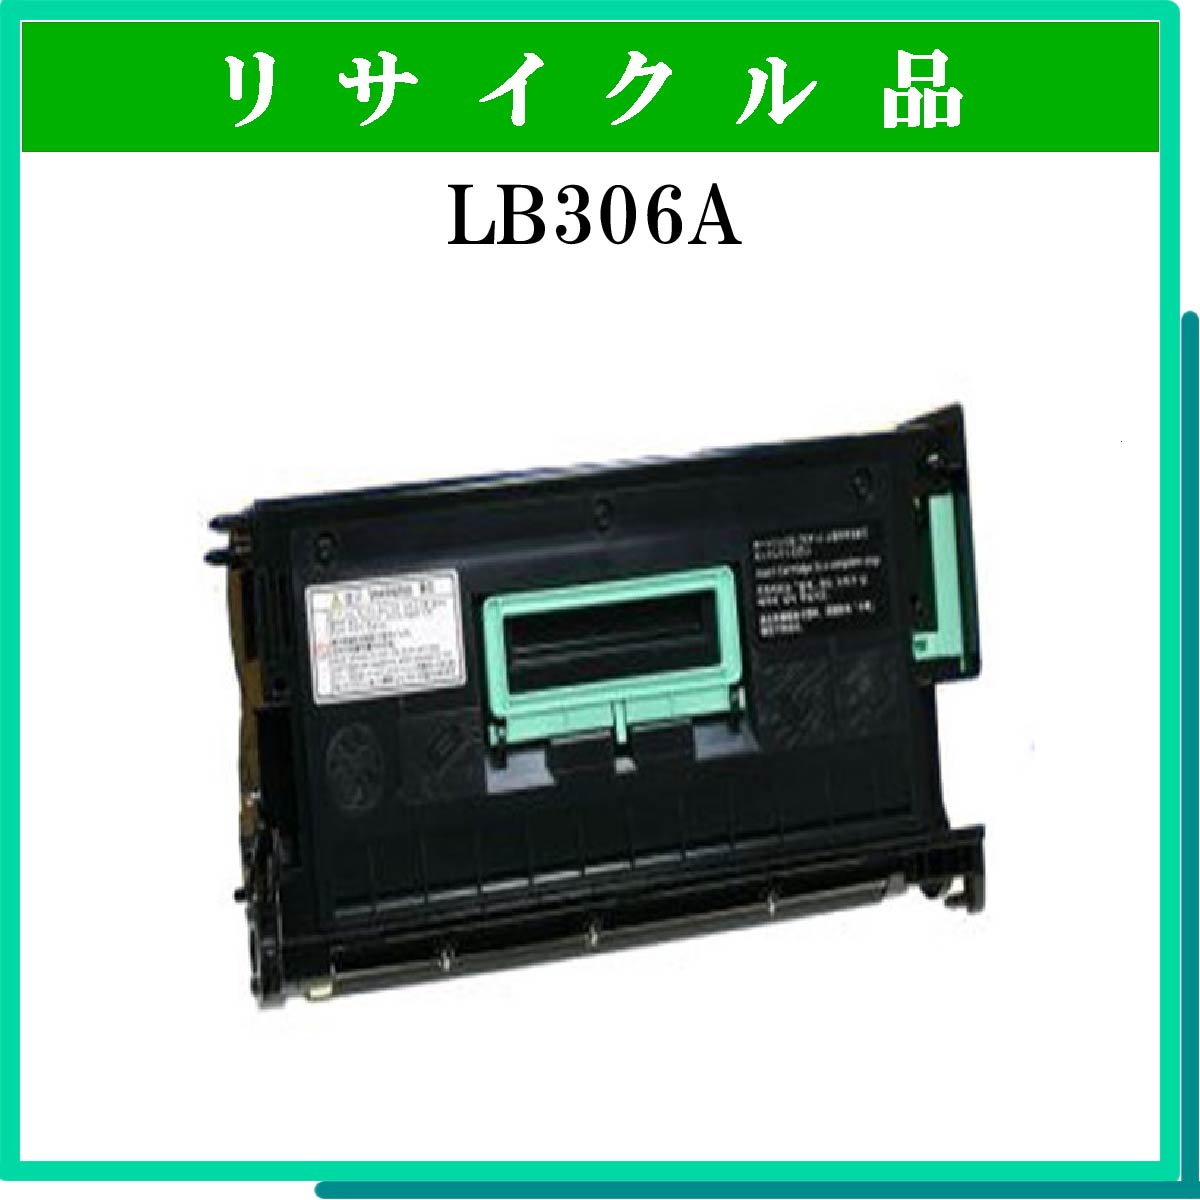 LB306A